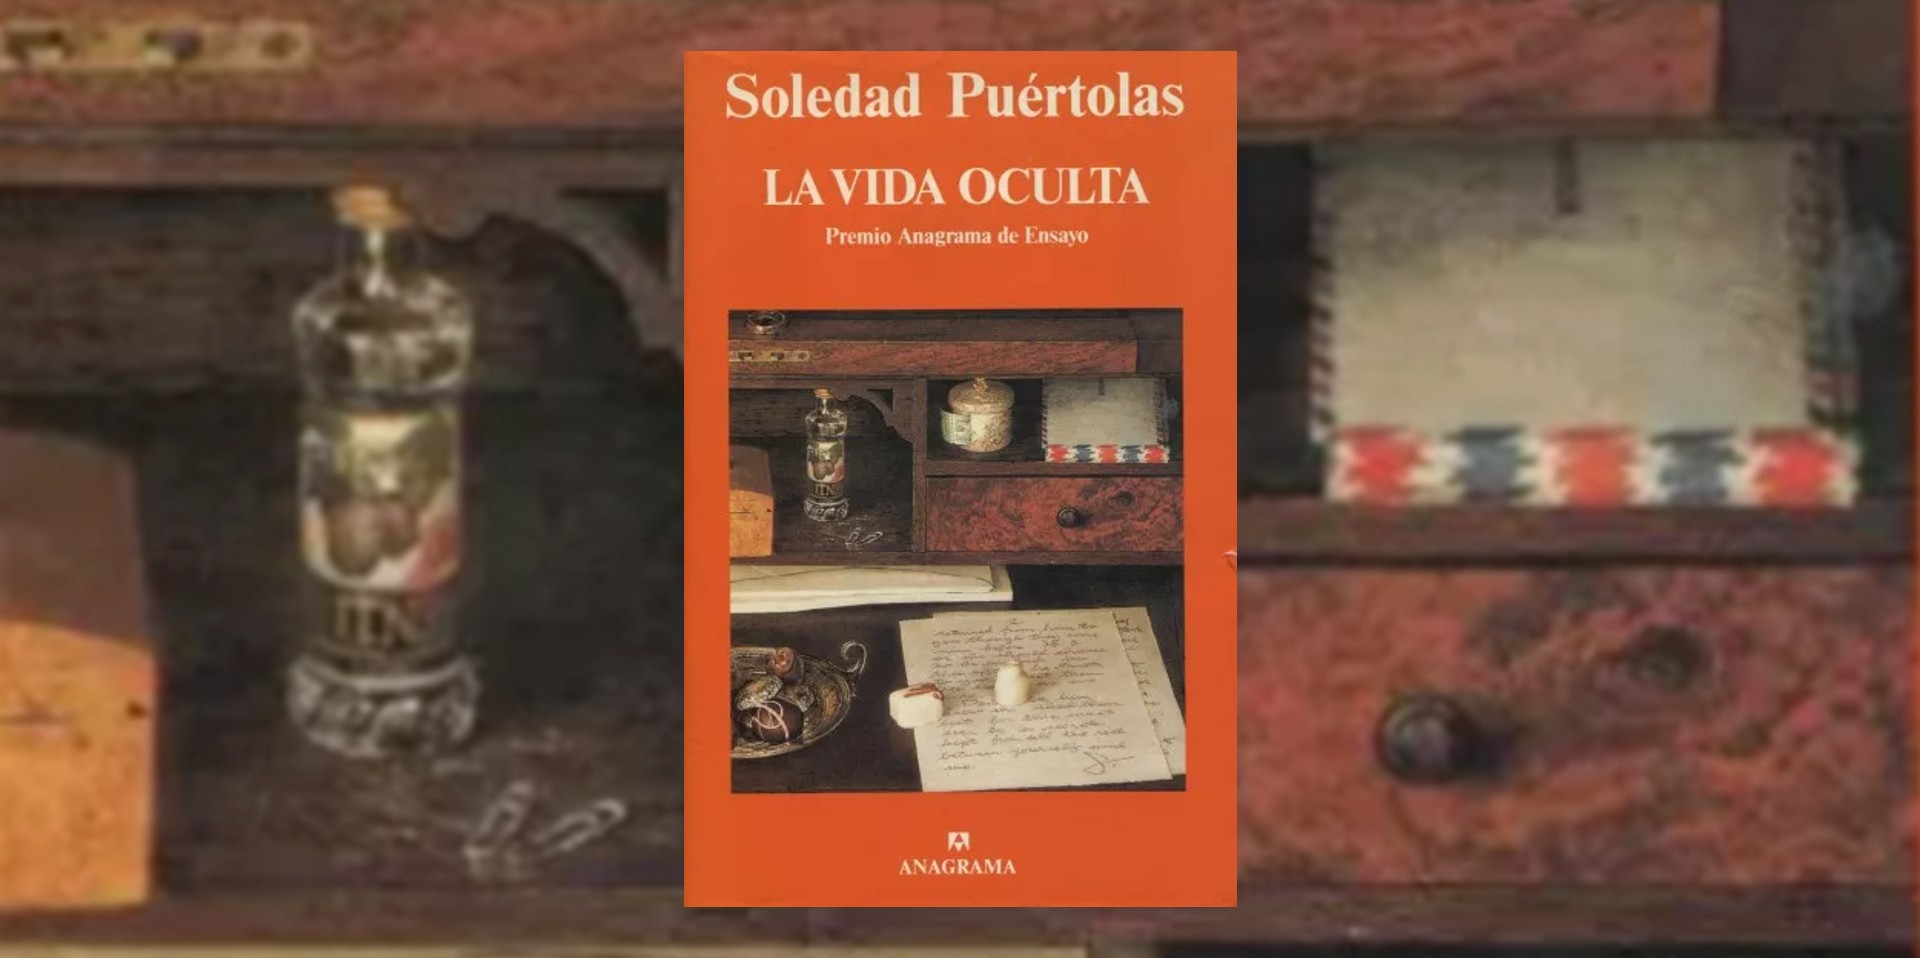 Portada del libro "La vida oculta", de Soledad Puértolas. (Anagrama).